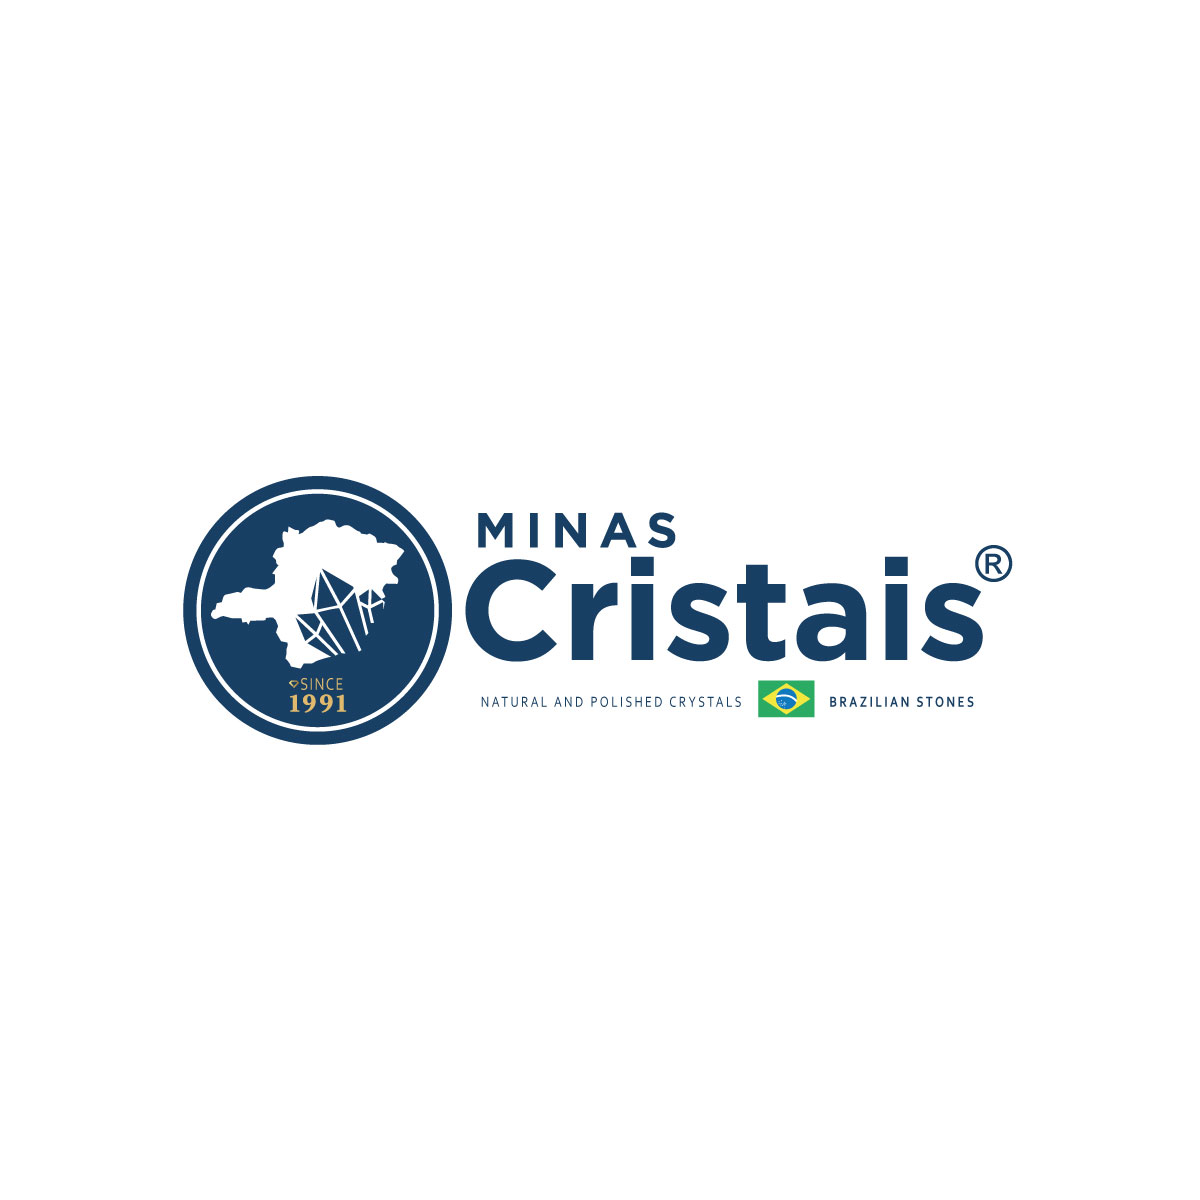 (c) Minascristais.com.br